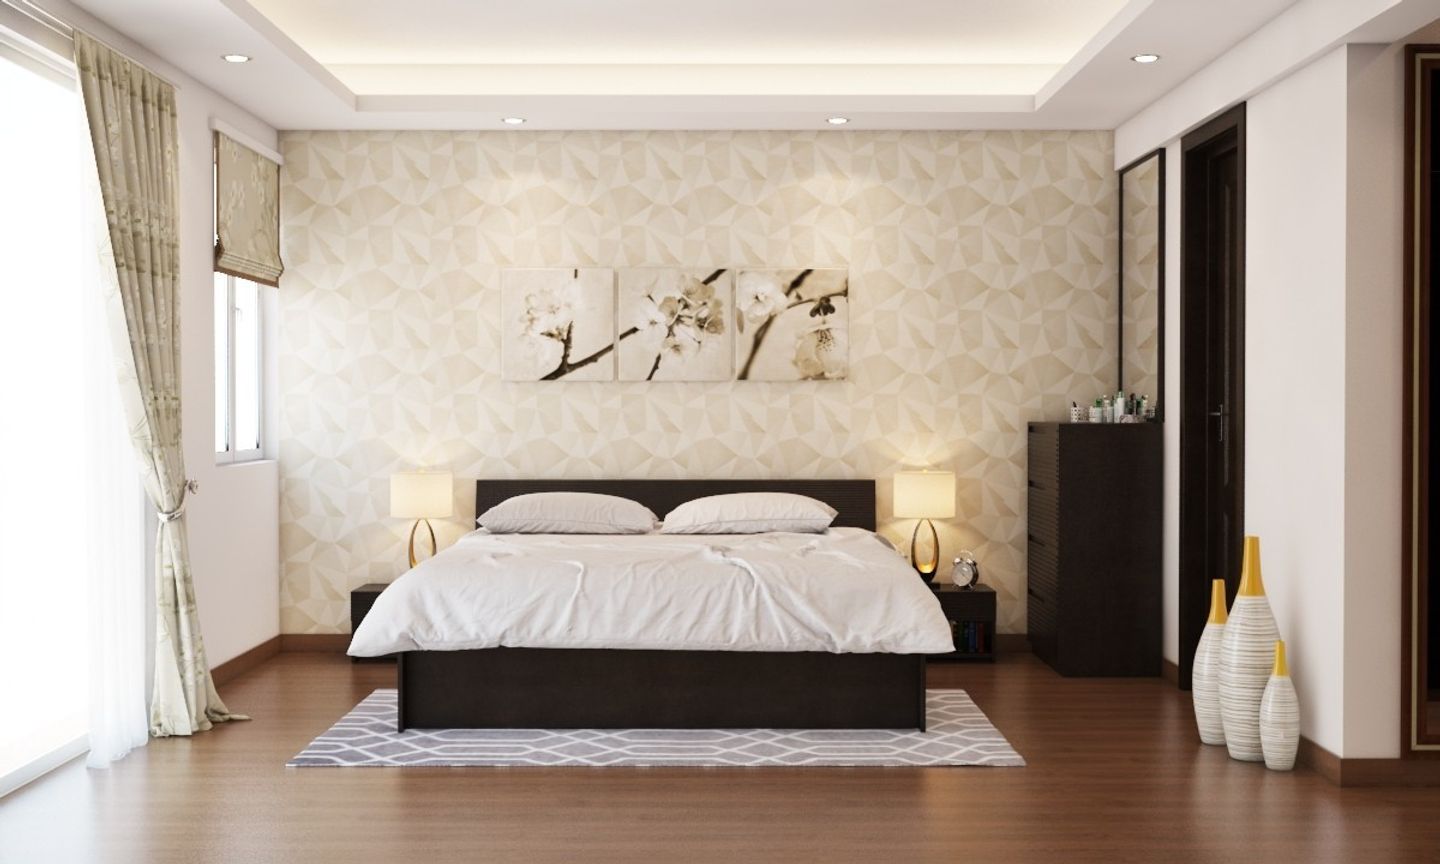 Spacious Guest Bedroom Design With Bedroom Wallpaper